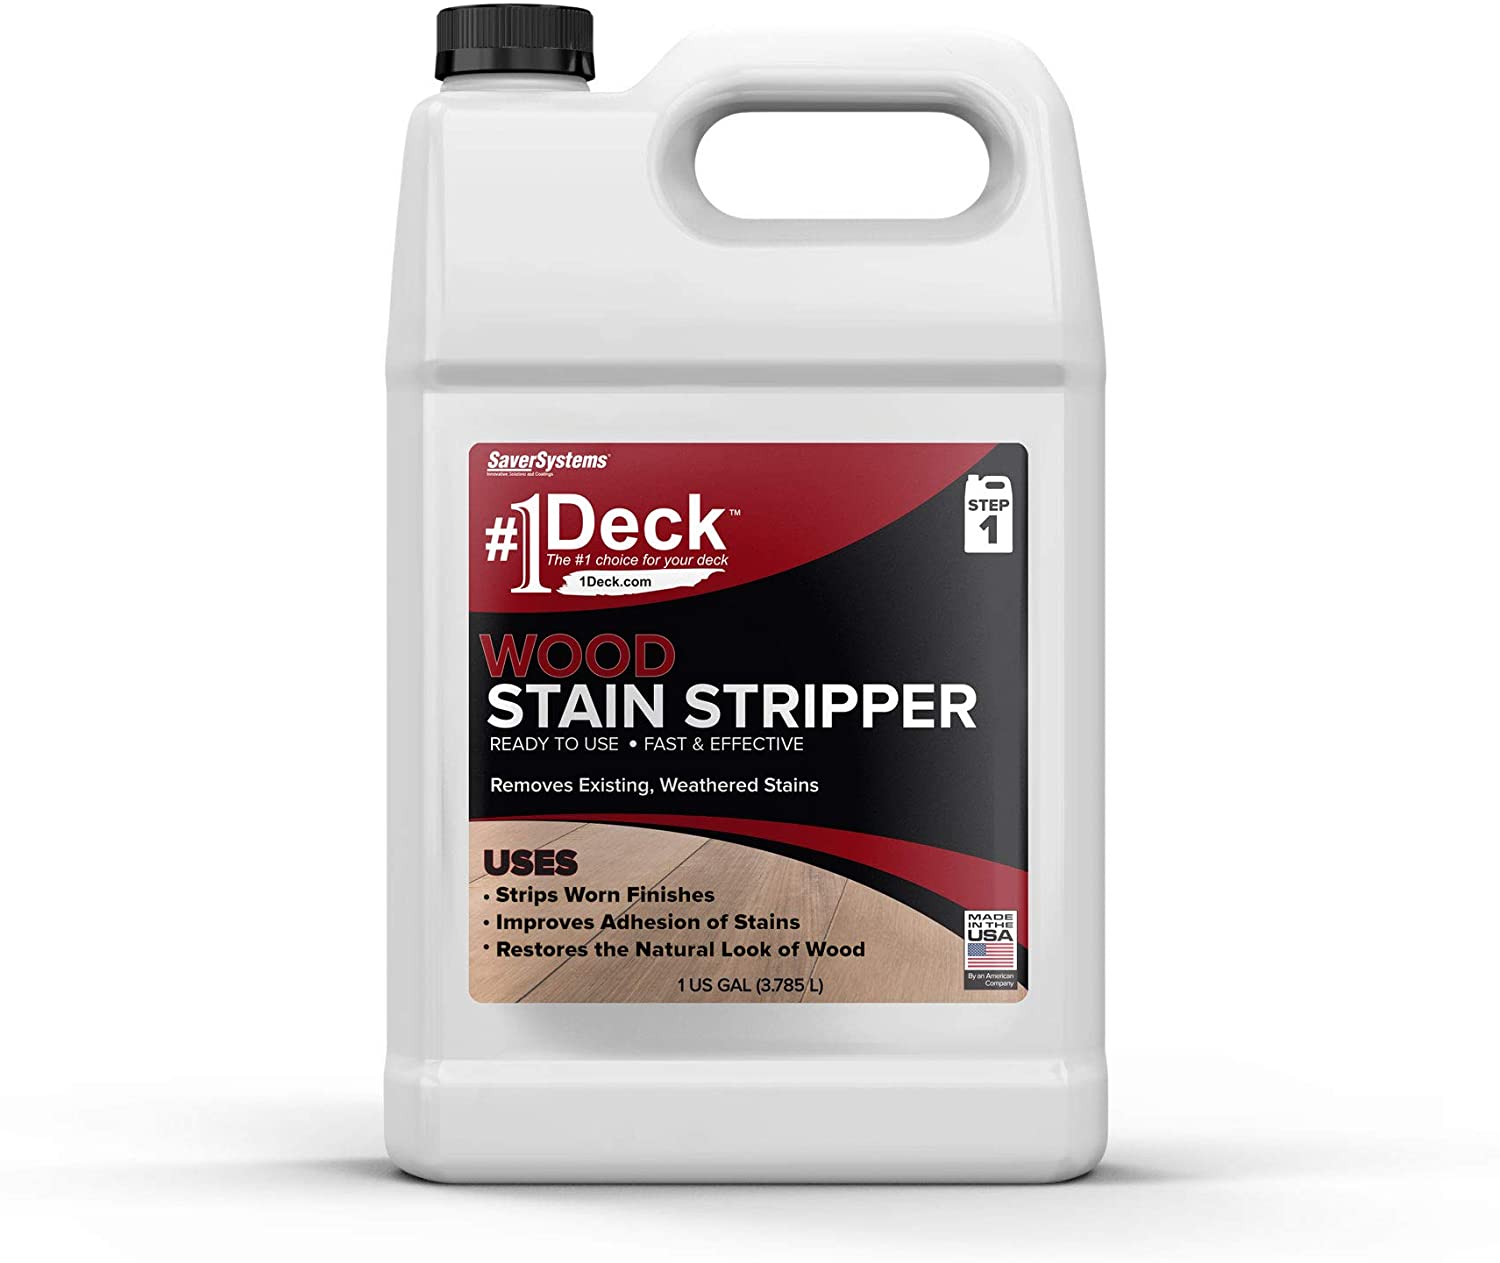 #1 Deck Wood Stain Stripper